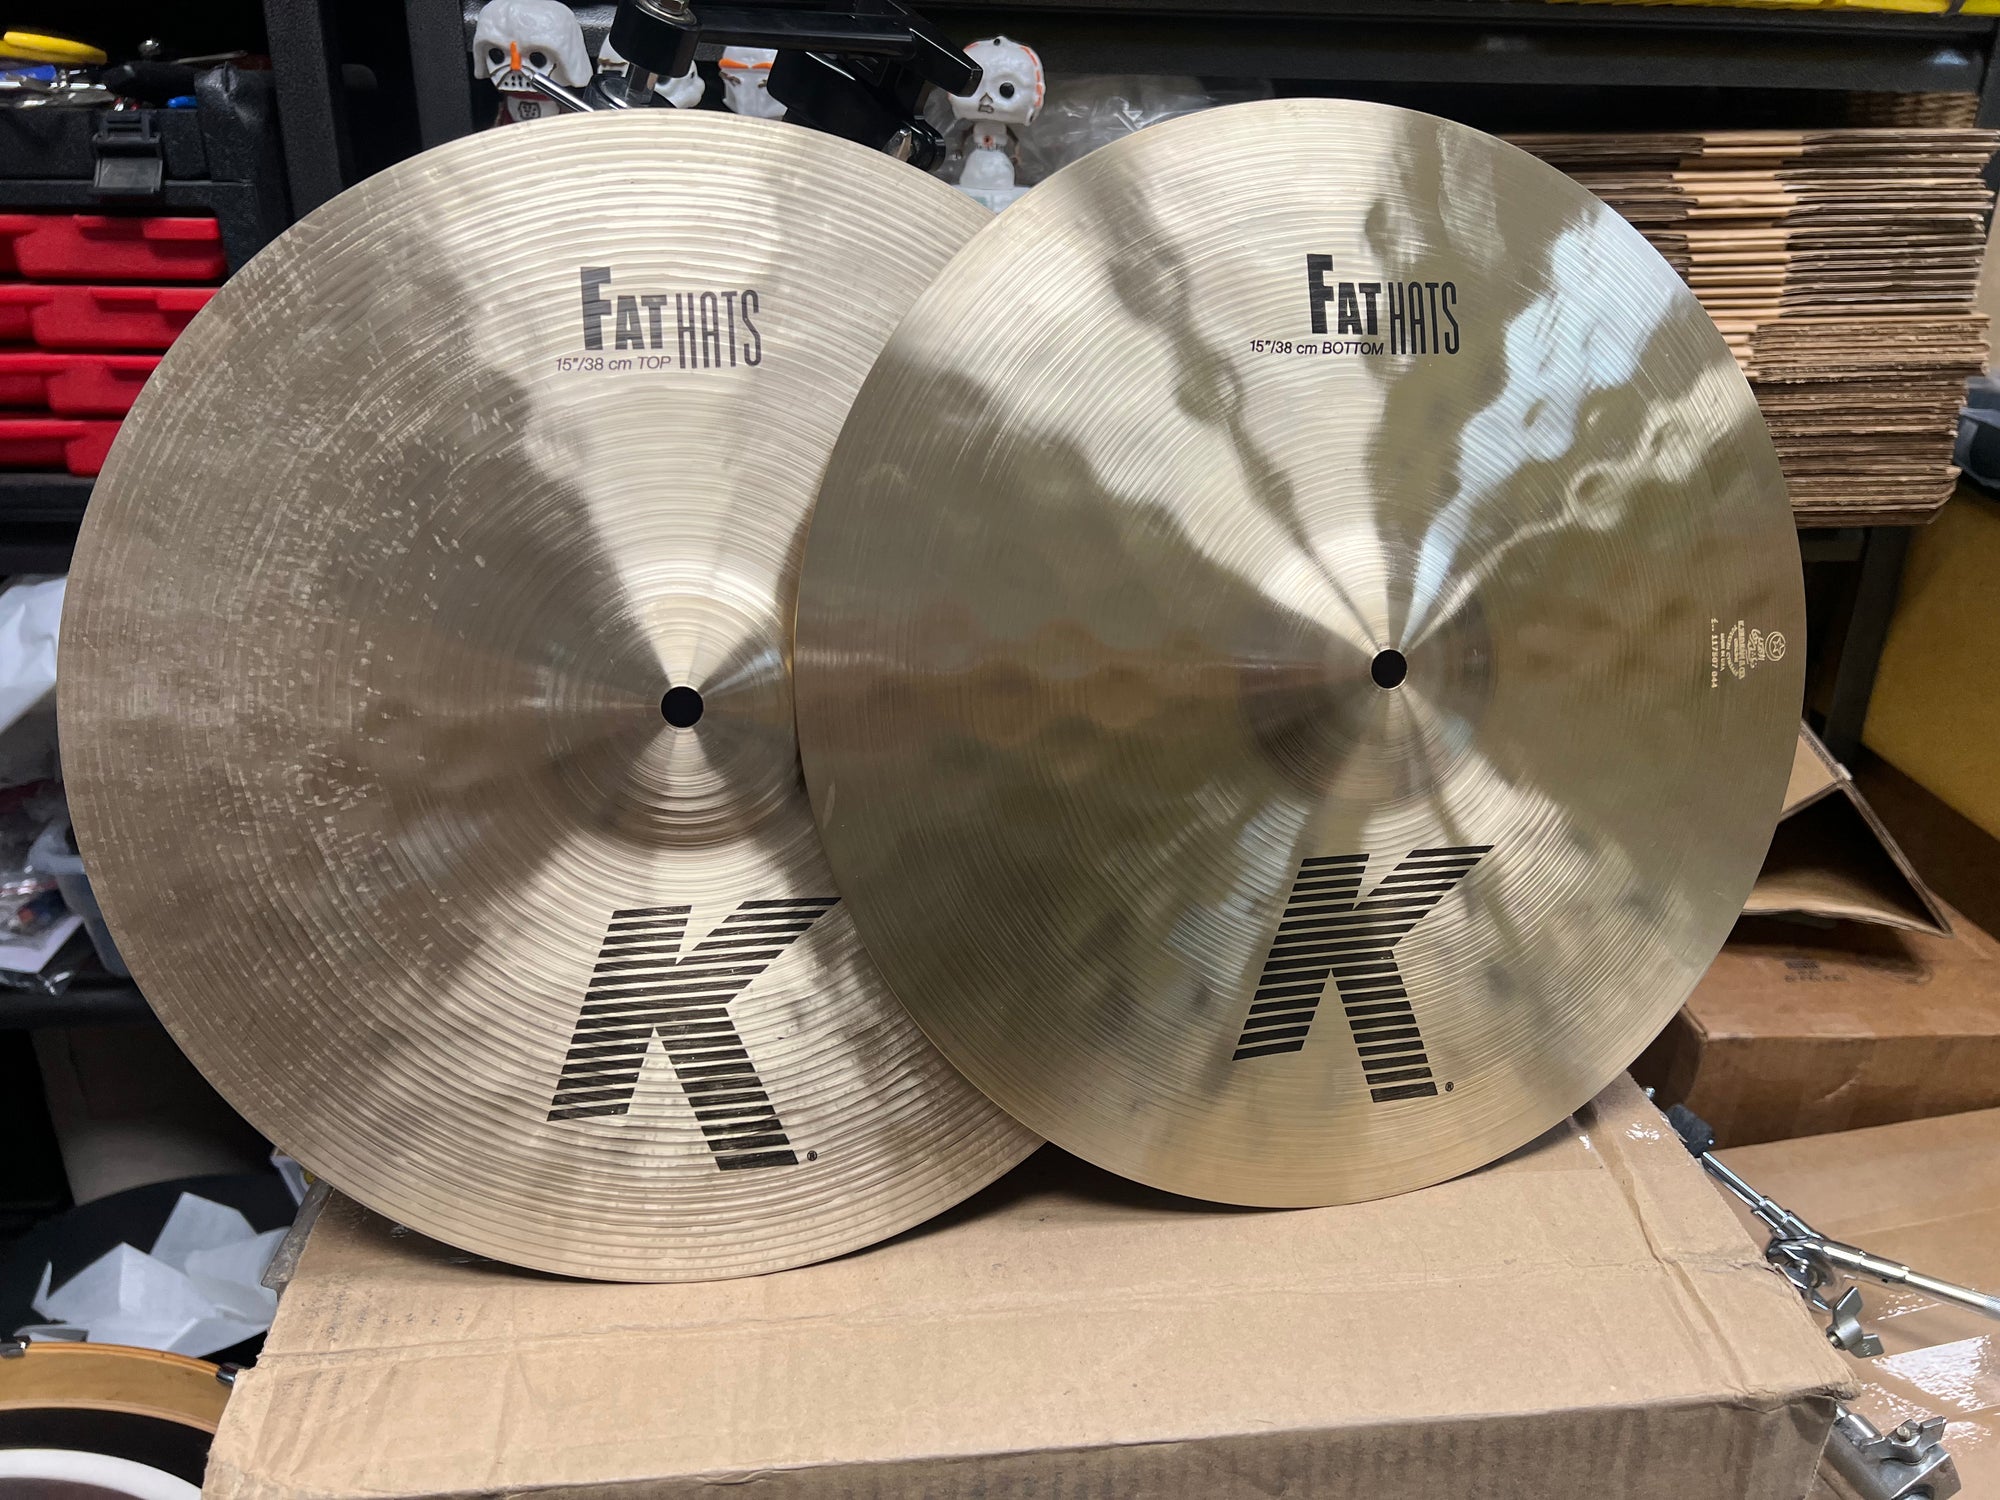 Zildjian 15” K Fat Hats hi hat cymbals